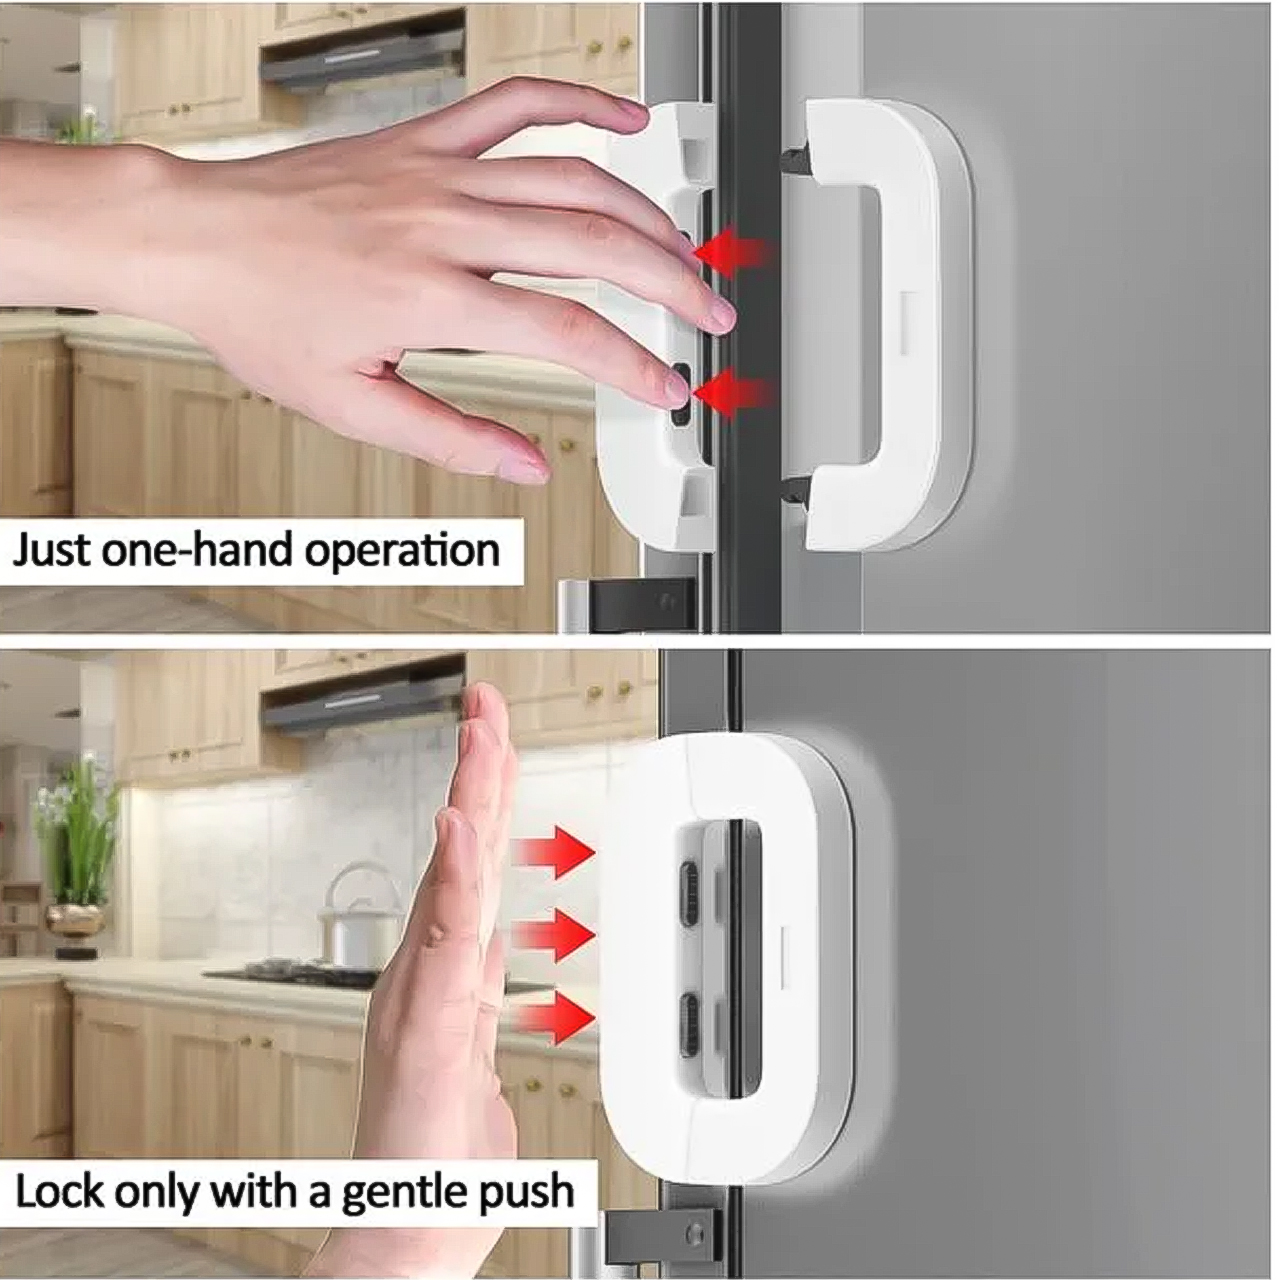 Khoá cửa ngăn kéo tủ lạnh đa năng bảo vệ an toàn cho bé - hàng chính hãng Vinetteam